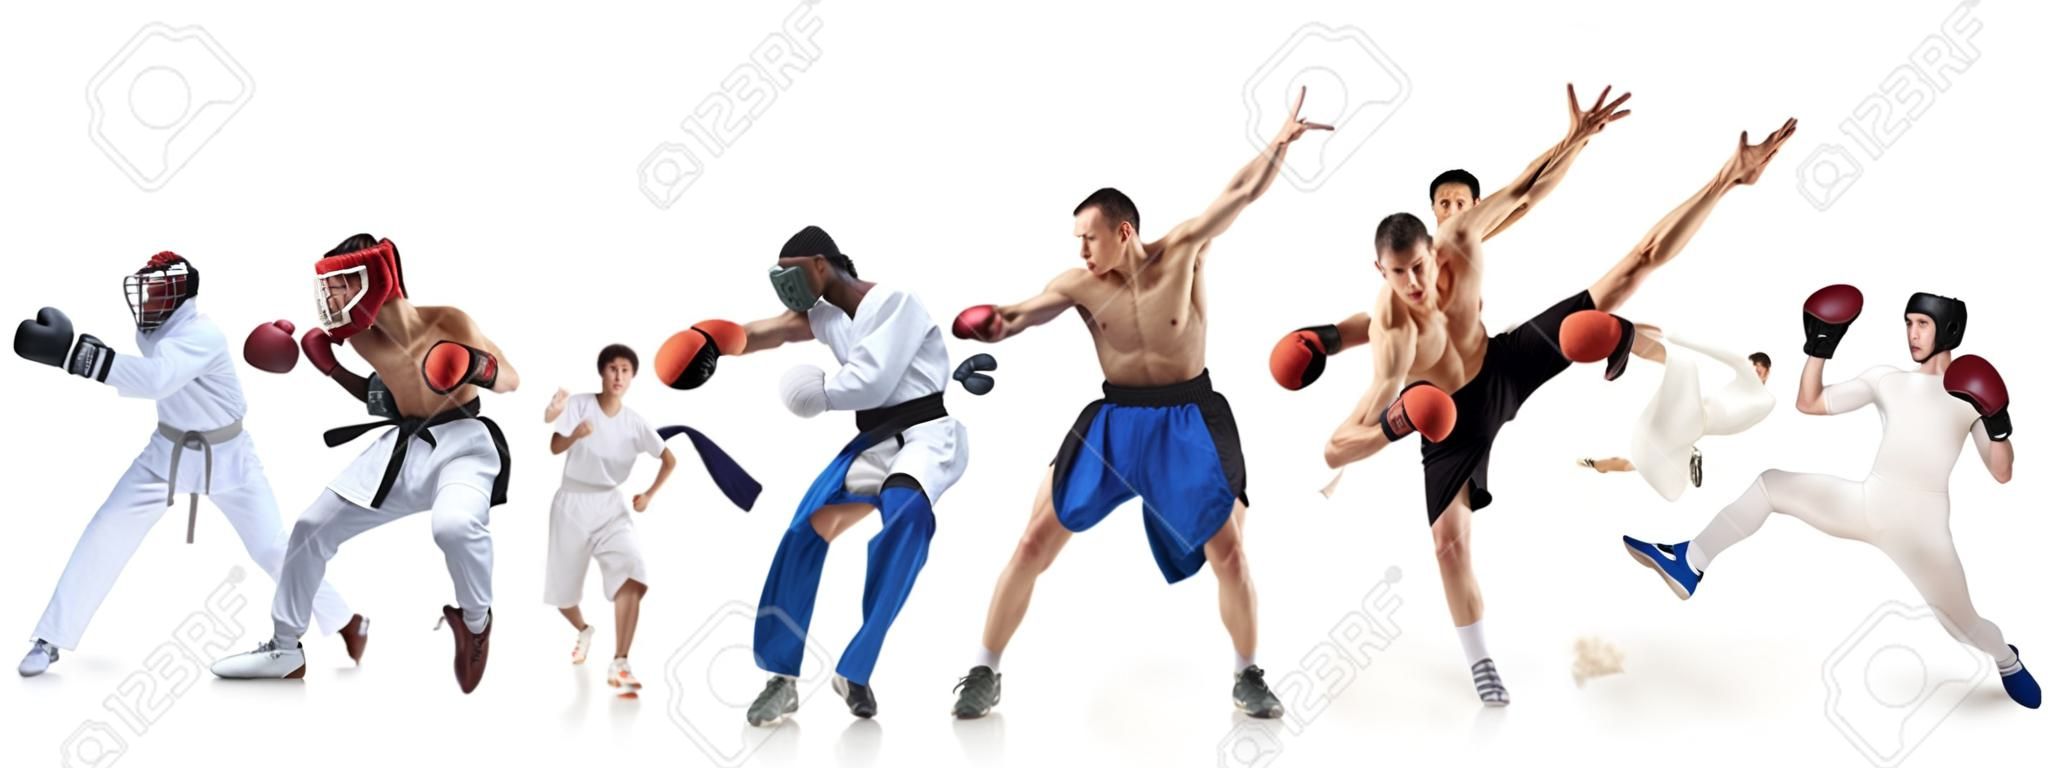 Collage deportivo sobre boxeo, fútbol, fútbol americano, baloncesto, hockey sobre hielo, esgrima, jogging, taekwondo, tenis.